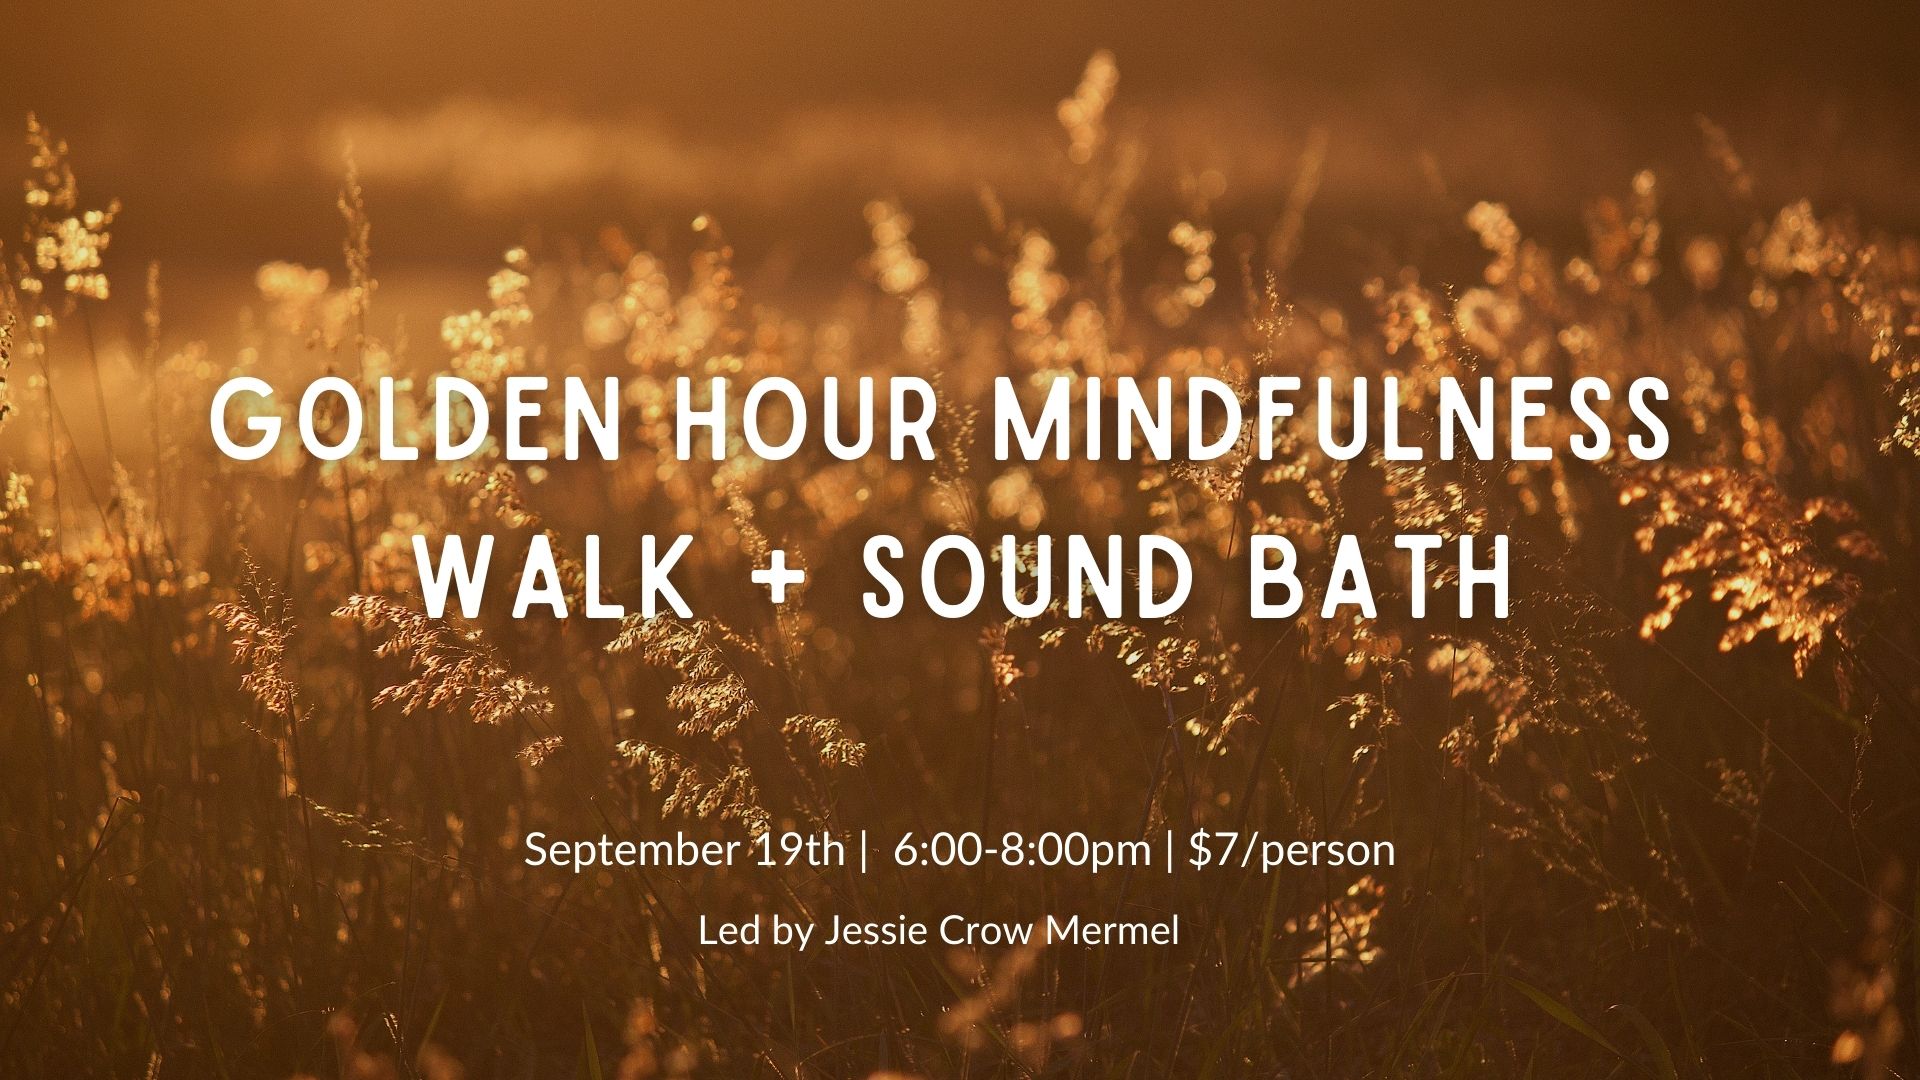 Golden Hour Mindfulness Walk + Sound Bath